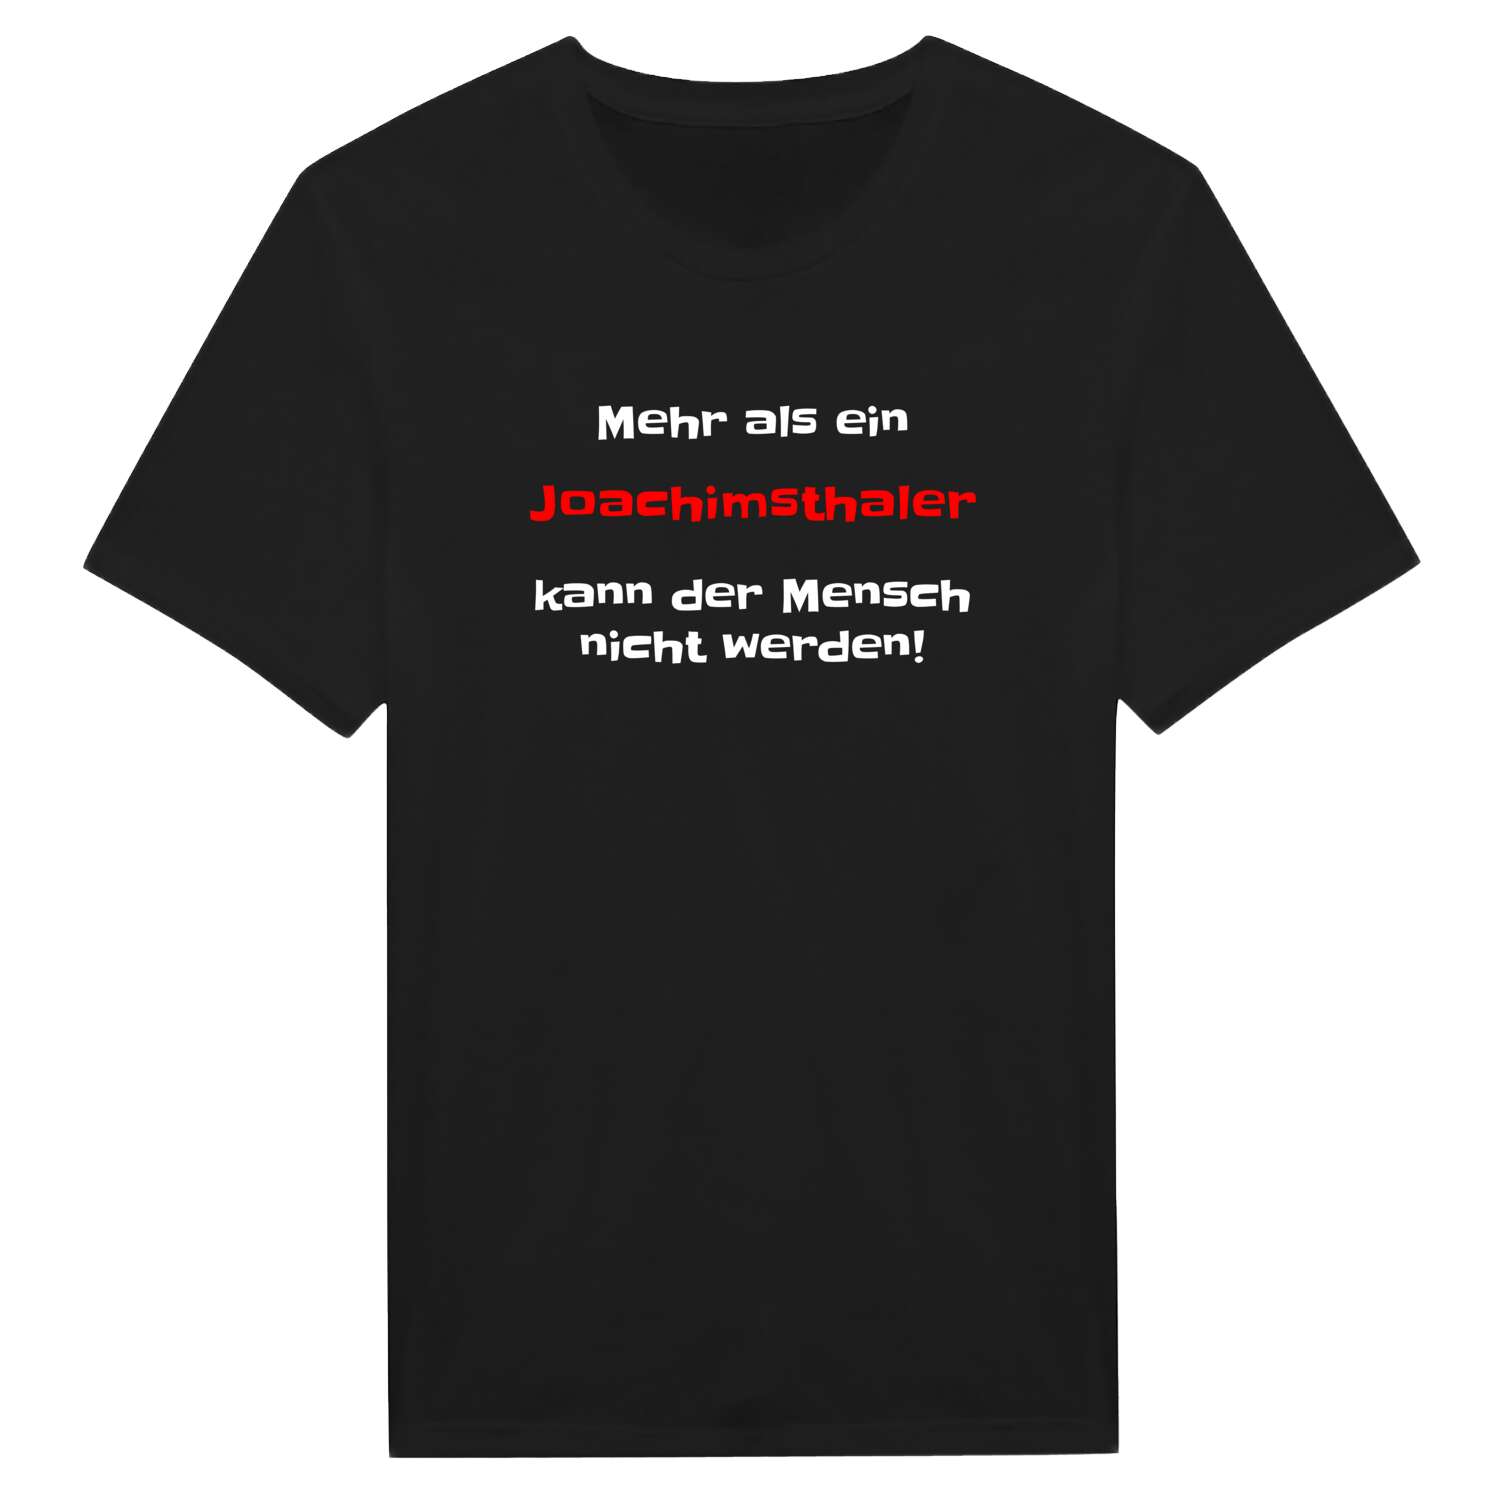 Joachimsthal T-Shirt »Mehr als ein«